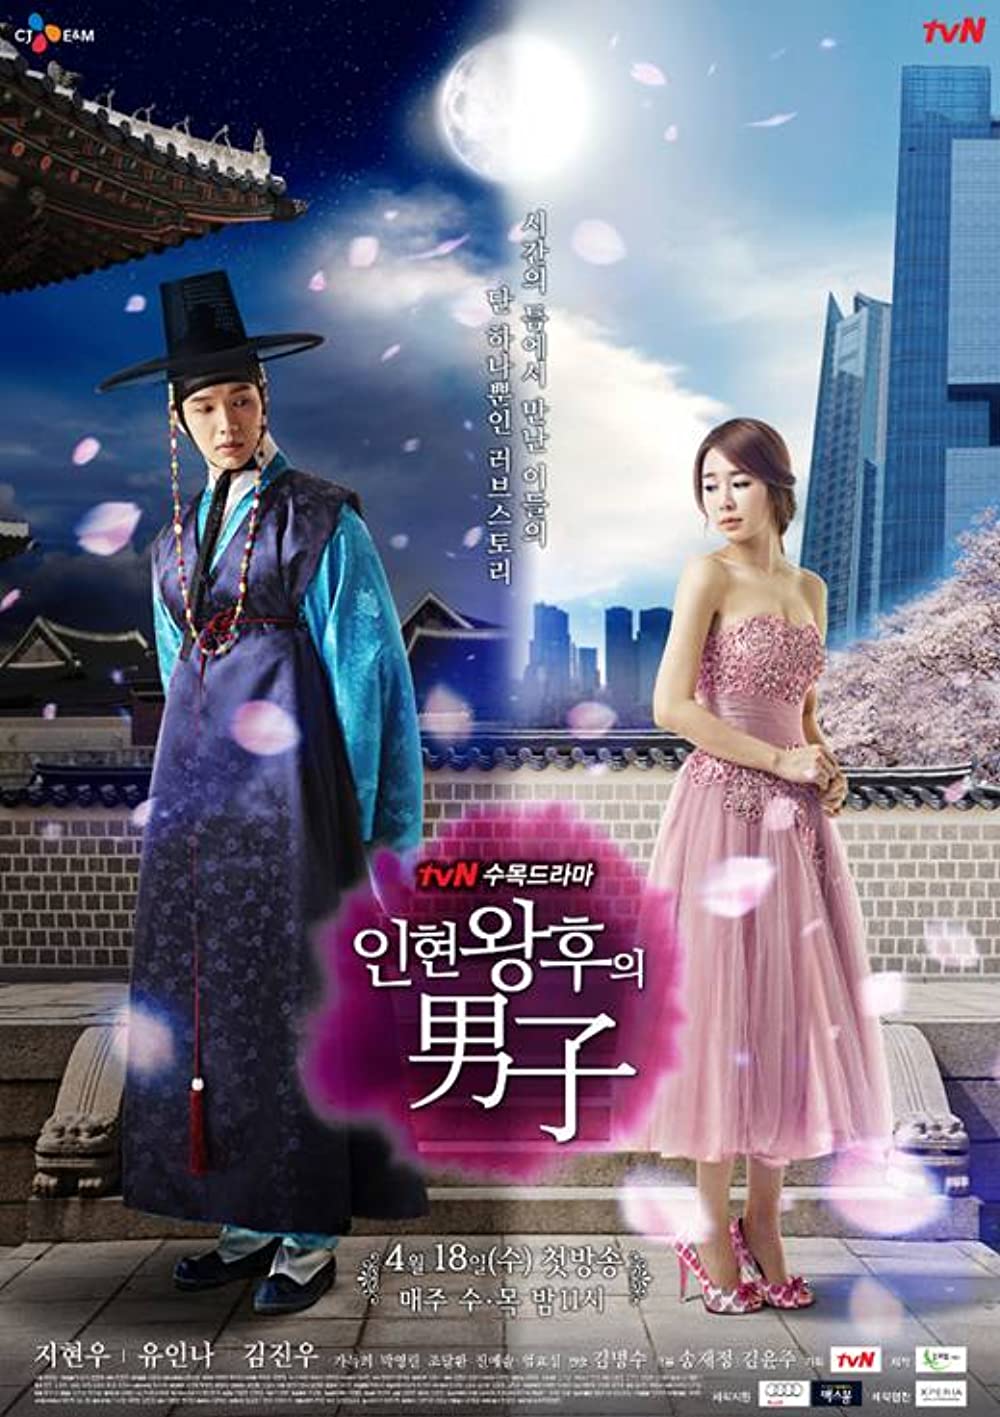 11 Drama Korea terbaik IMDb tentang perjalanan waktu